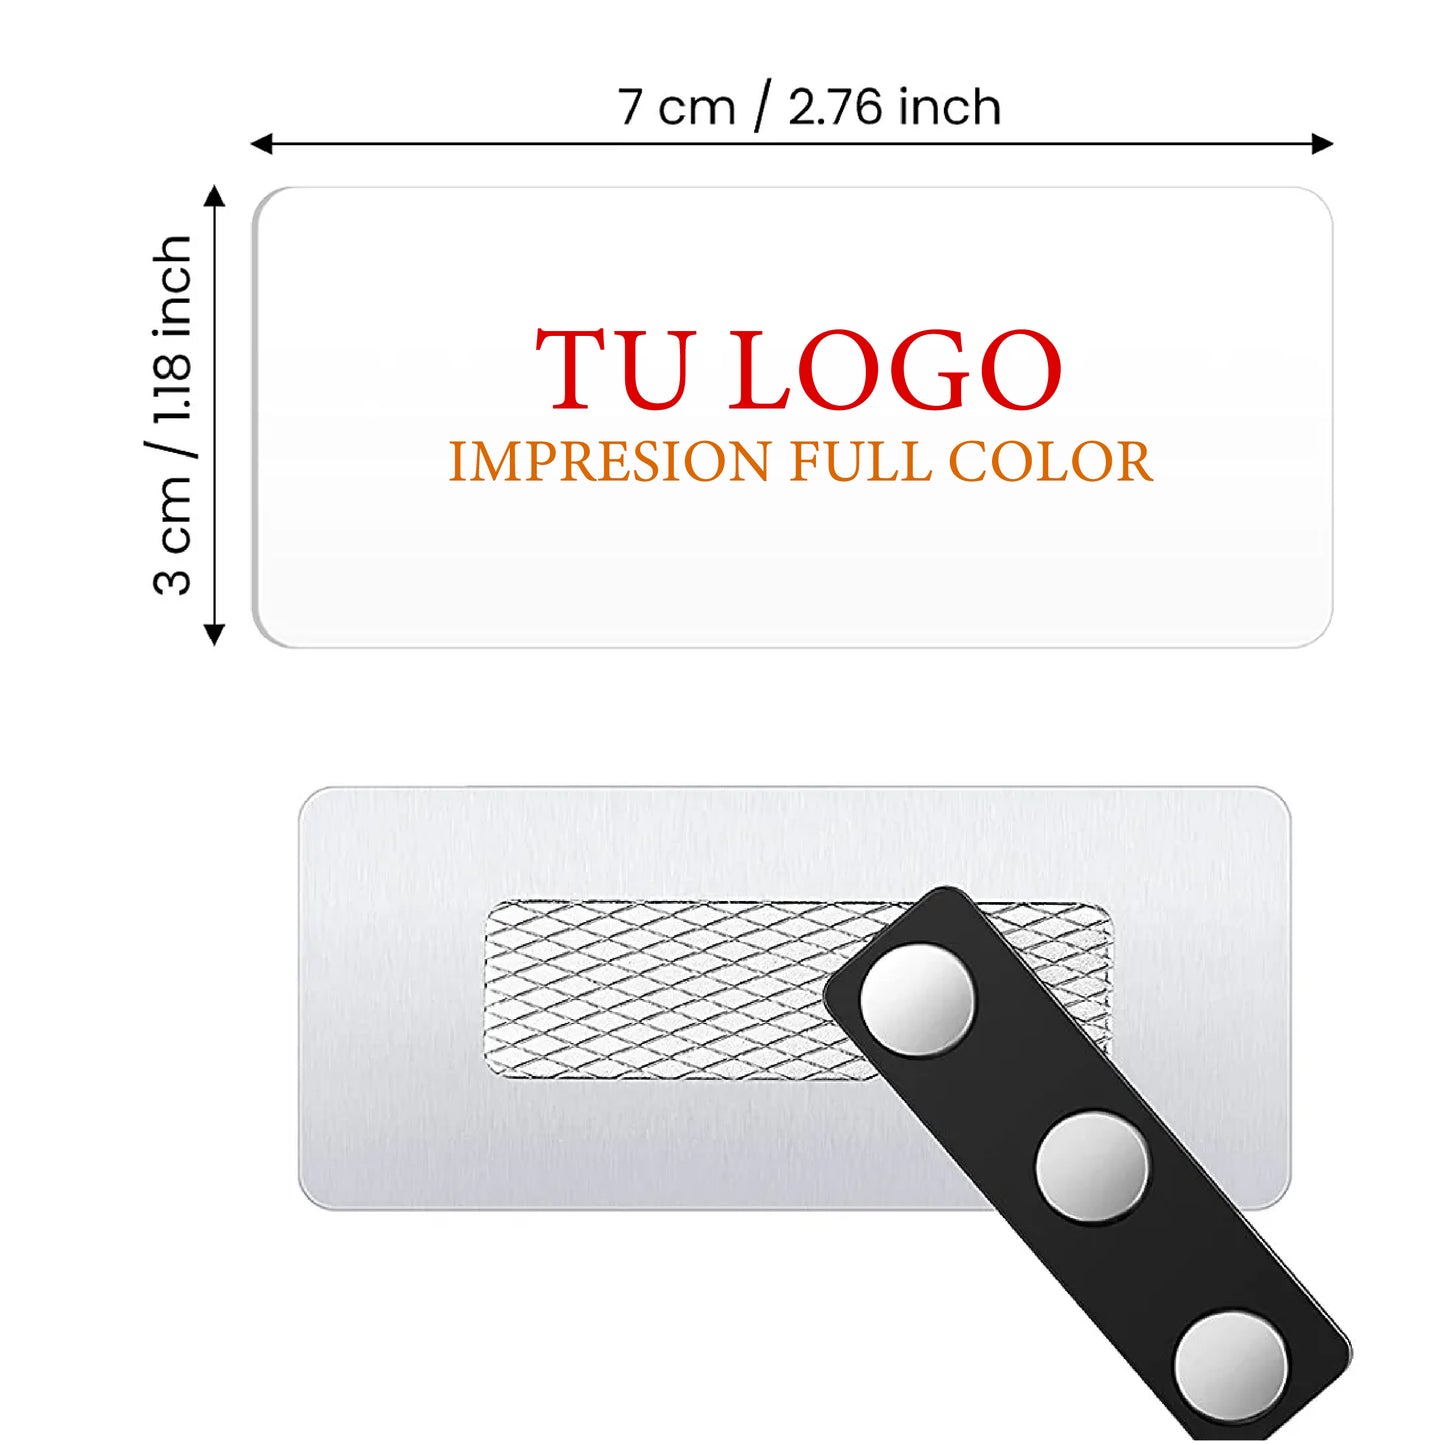 Distintivos Magnéticos (Name Tags) Personalizados Full Color Para Empresas, Hotelería, Servicio al Cliente